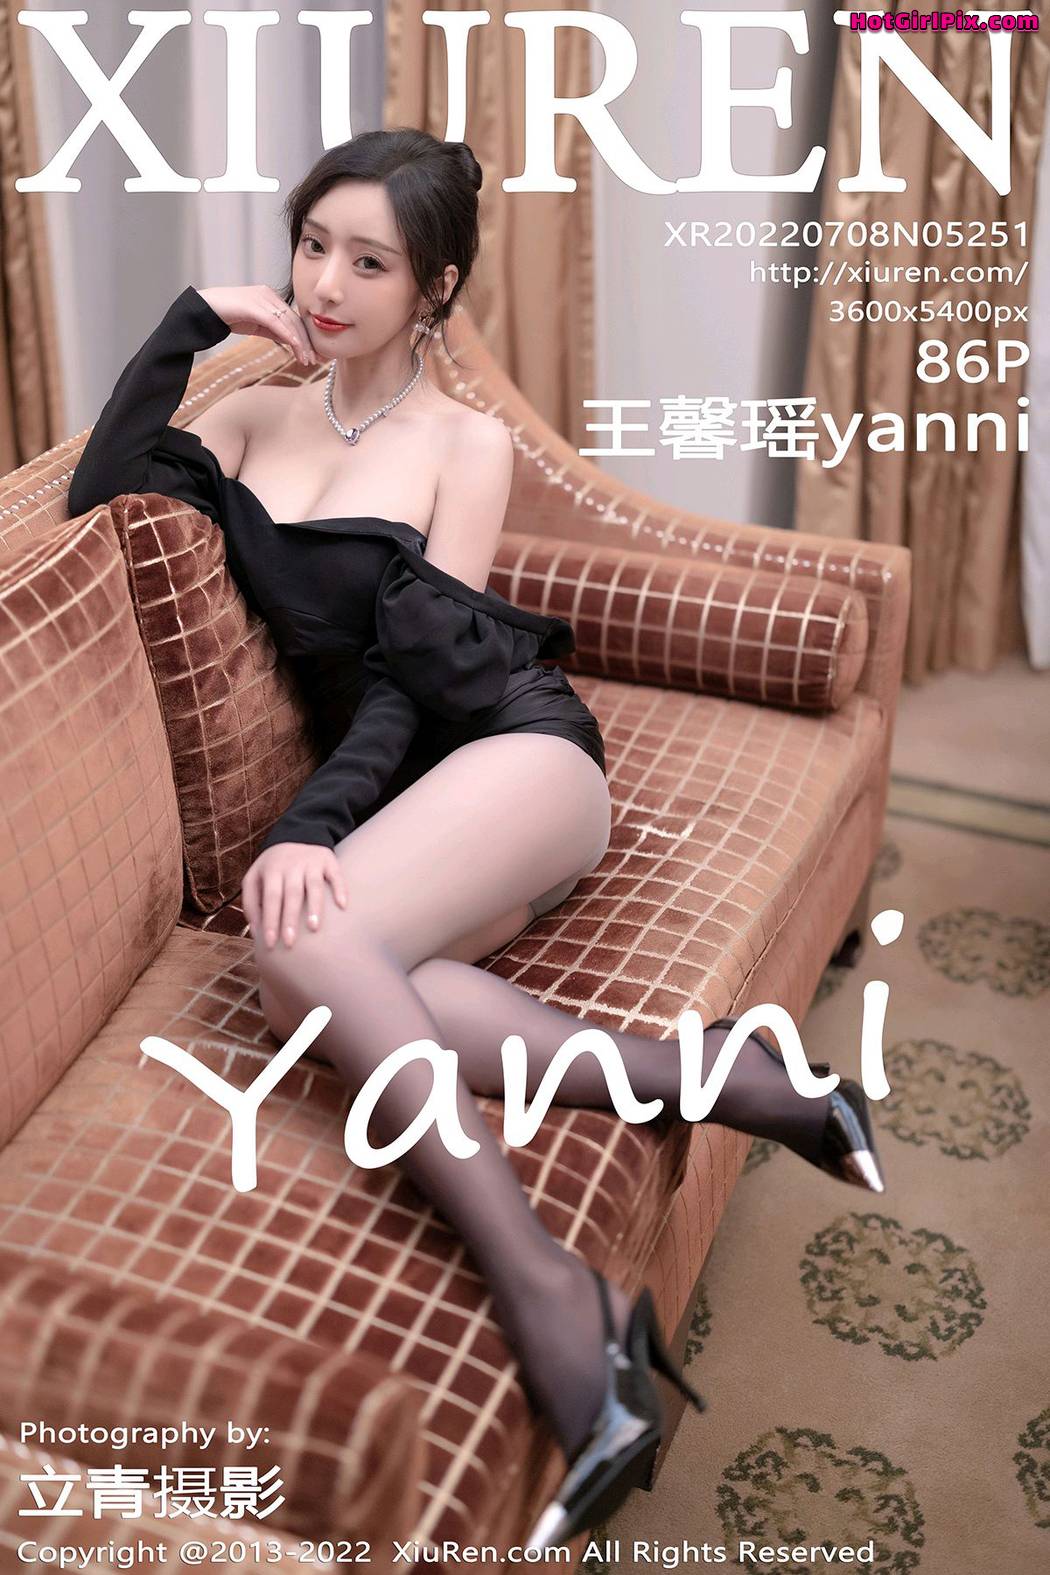 [XIUREN] No.5251 Wang Xin Yao 王馨瑶yanni